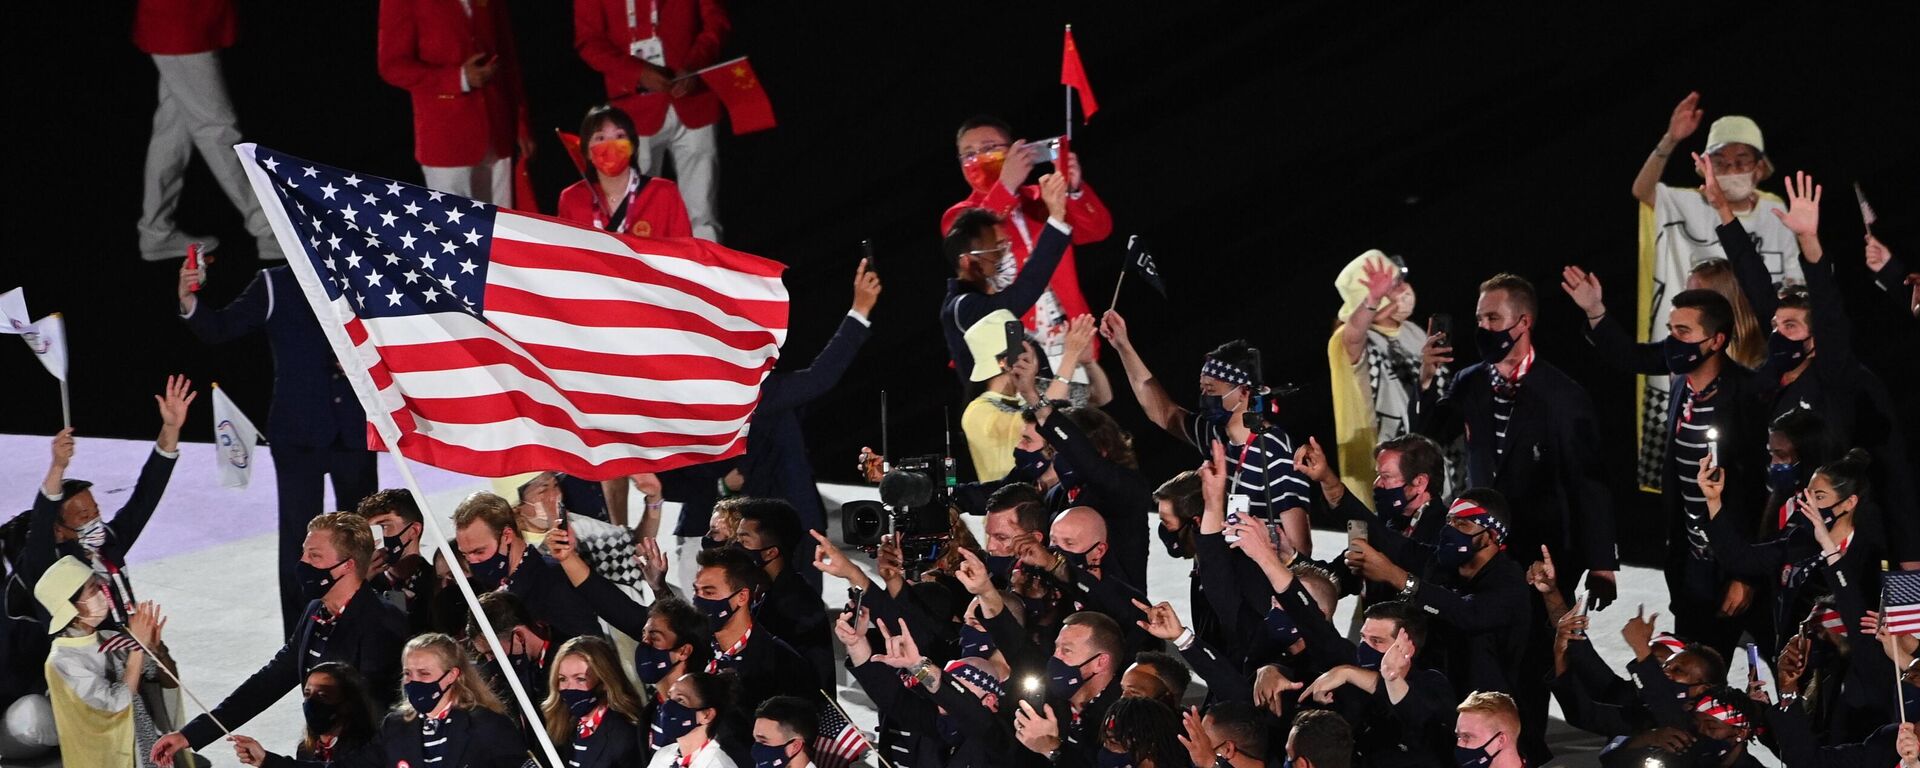 Спортсмены сборной США на параде атлетов на церемонии открытия XXXII летних Олимпийских игр в Токио. - Sputnik Молдова, 1920, 08.08.2021